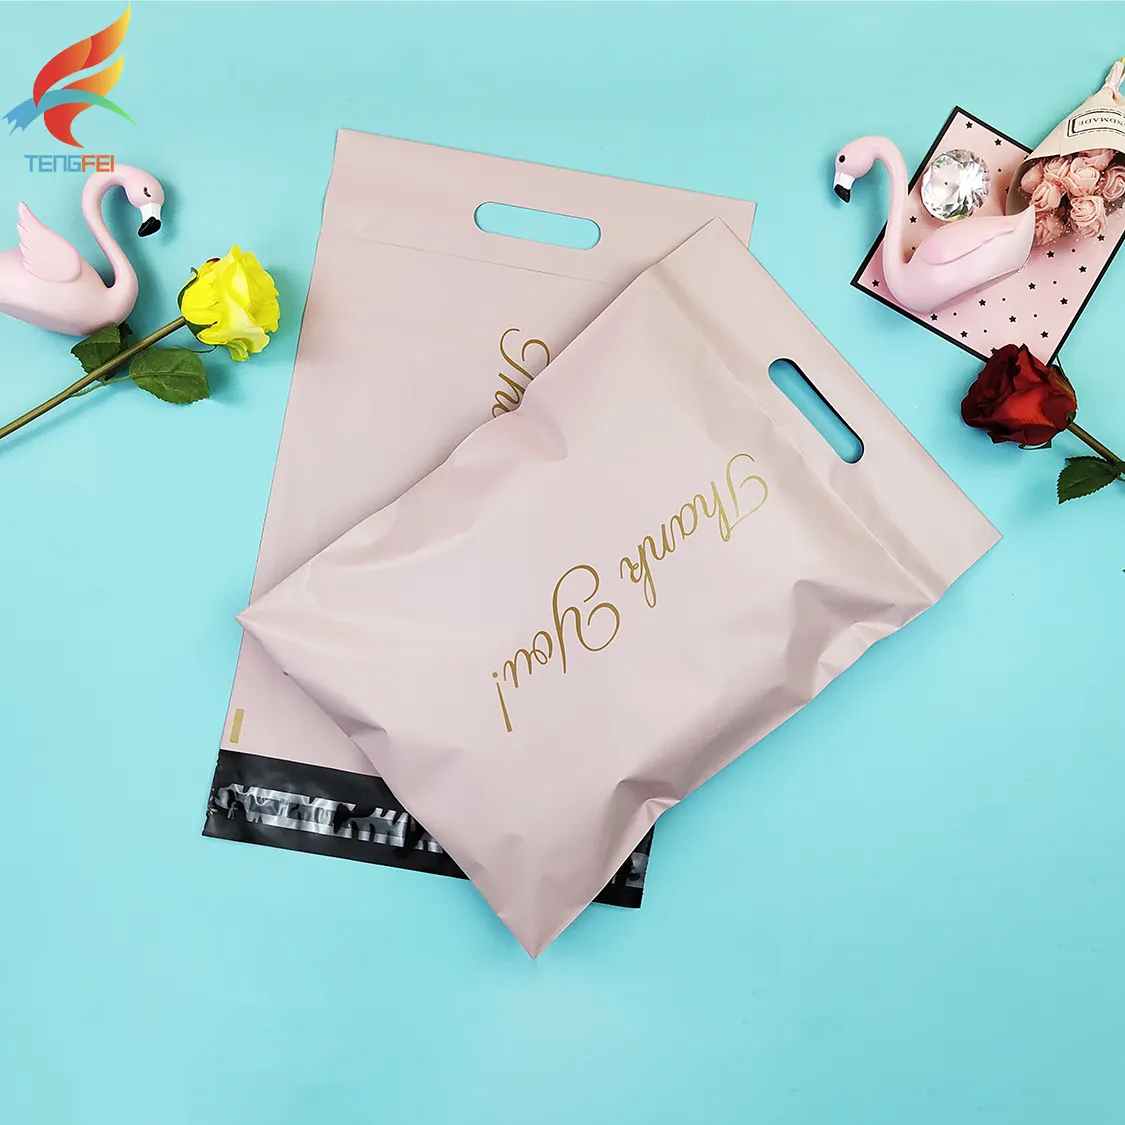 Пользовательская Красочная Одежда, логистическая упаковка, полиэтиленовый пакет, сумки для доставки, почтовый пакет, пакет с ручкой